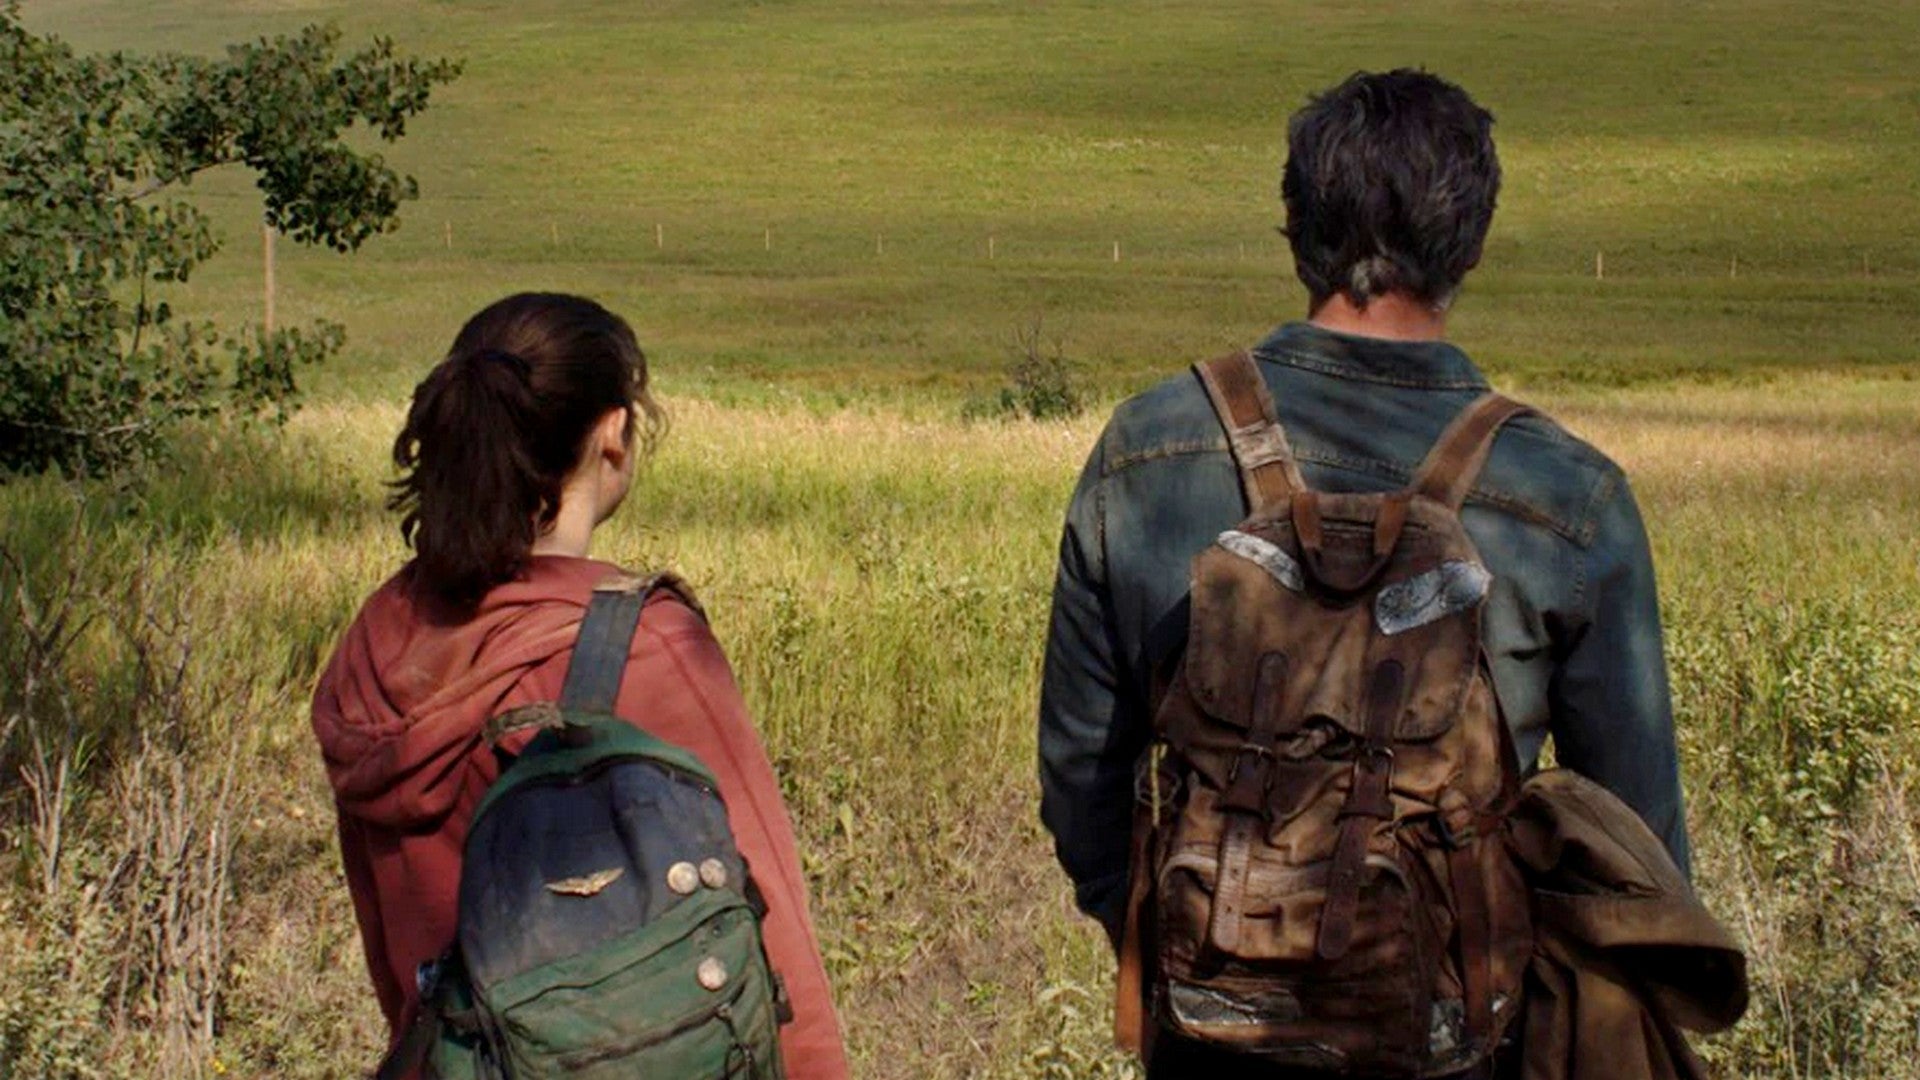 Bilder zu The Last of Us: Regisseur nennt Startzeitraum der Serie